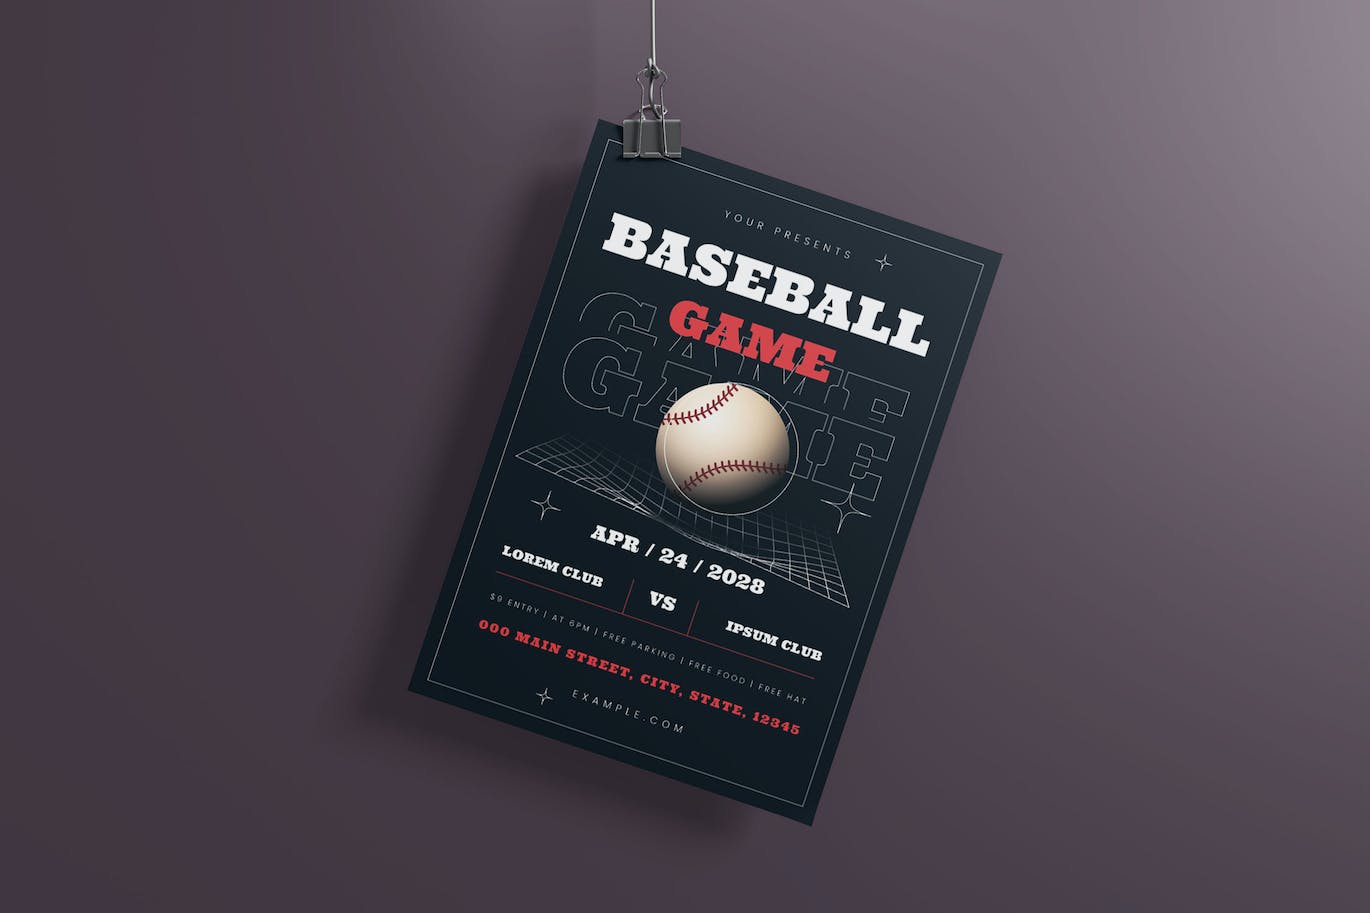 棒球比赛活动海报素材 Baseball Game Flyer Set 设计素材 第2张